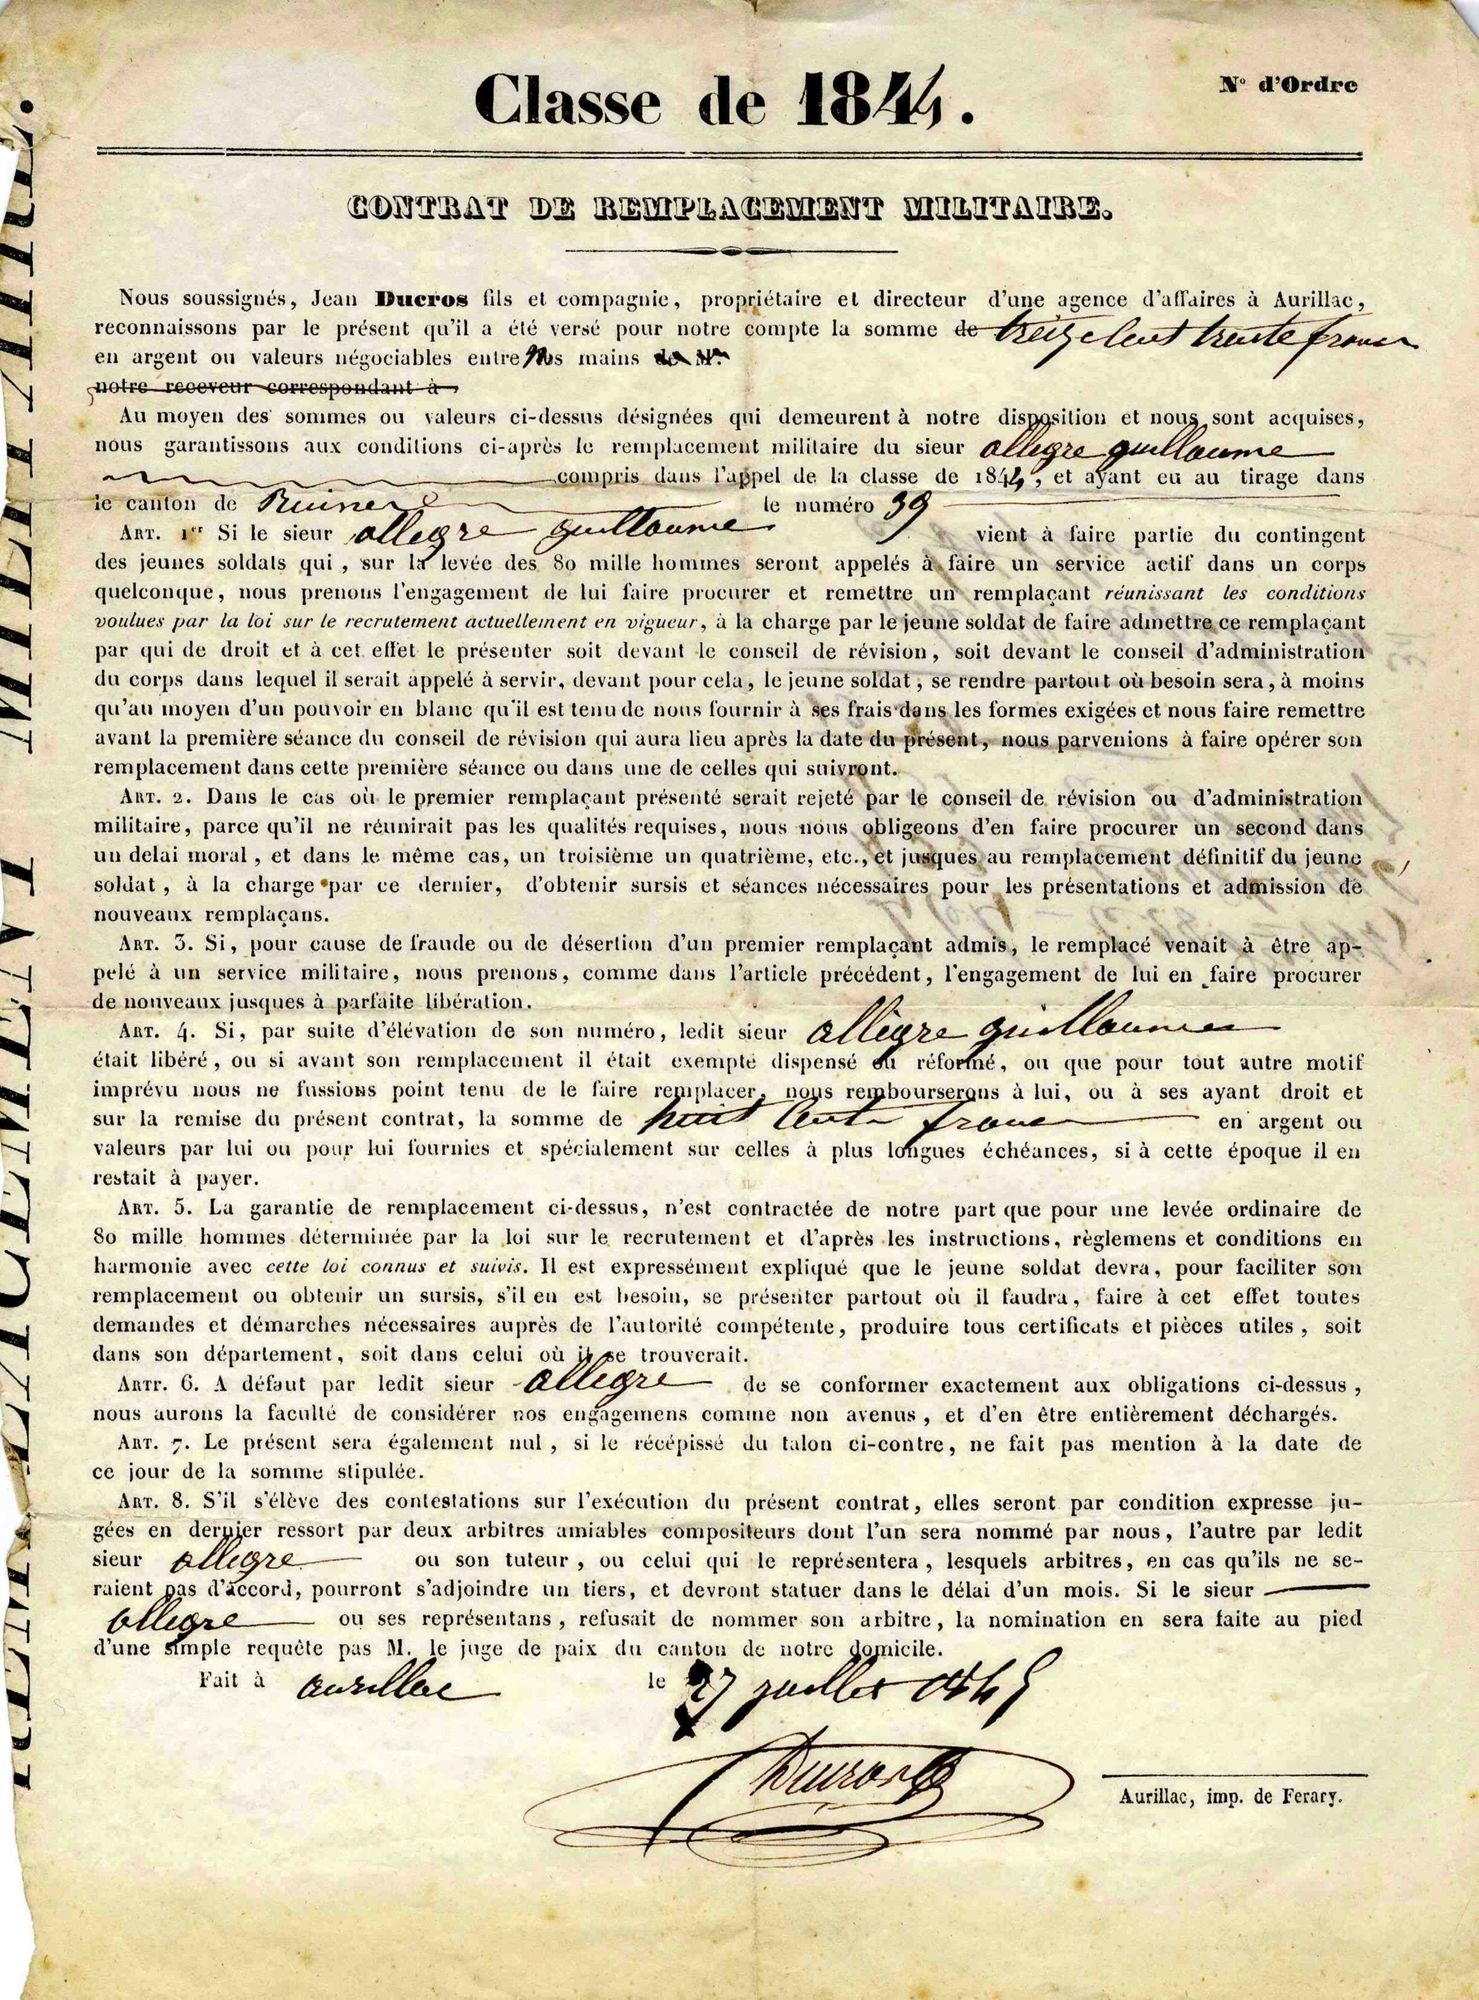 Contrat de remplacement militaire de G. Allegre par J. Ducros en 1844 - 1330 frs